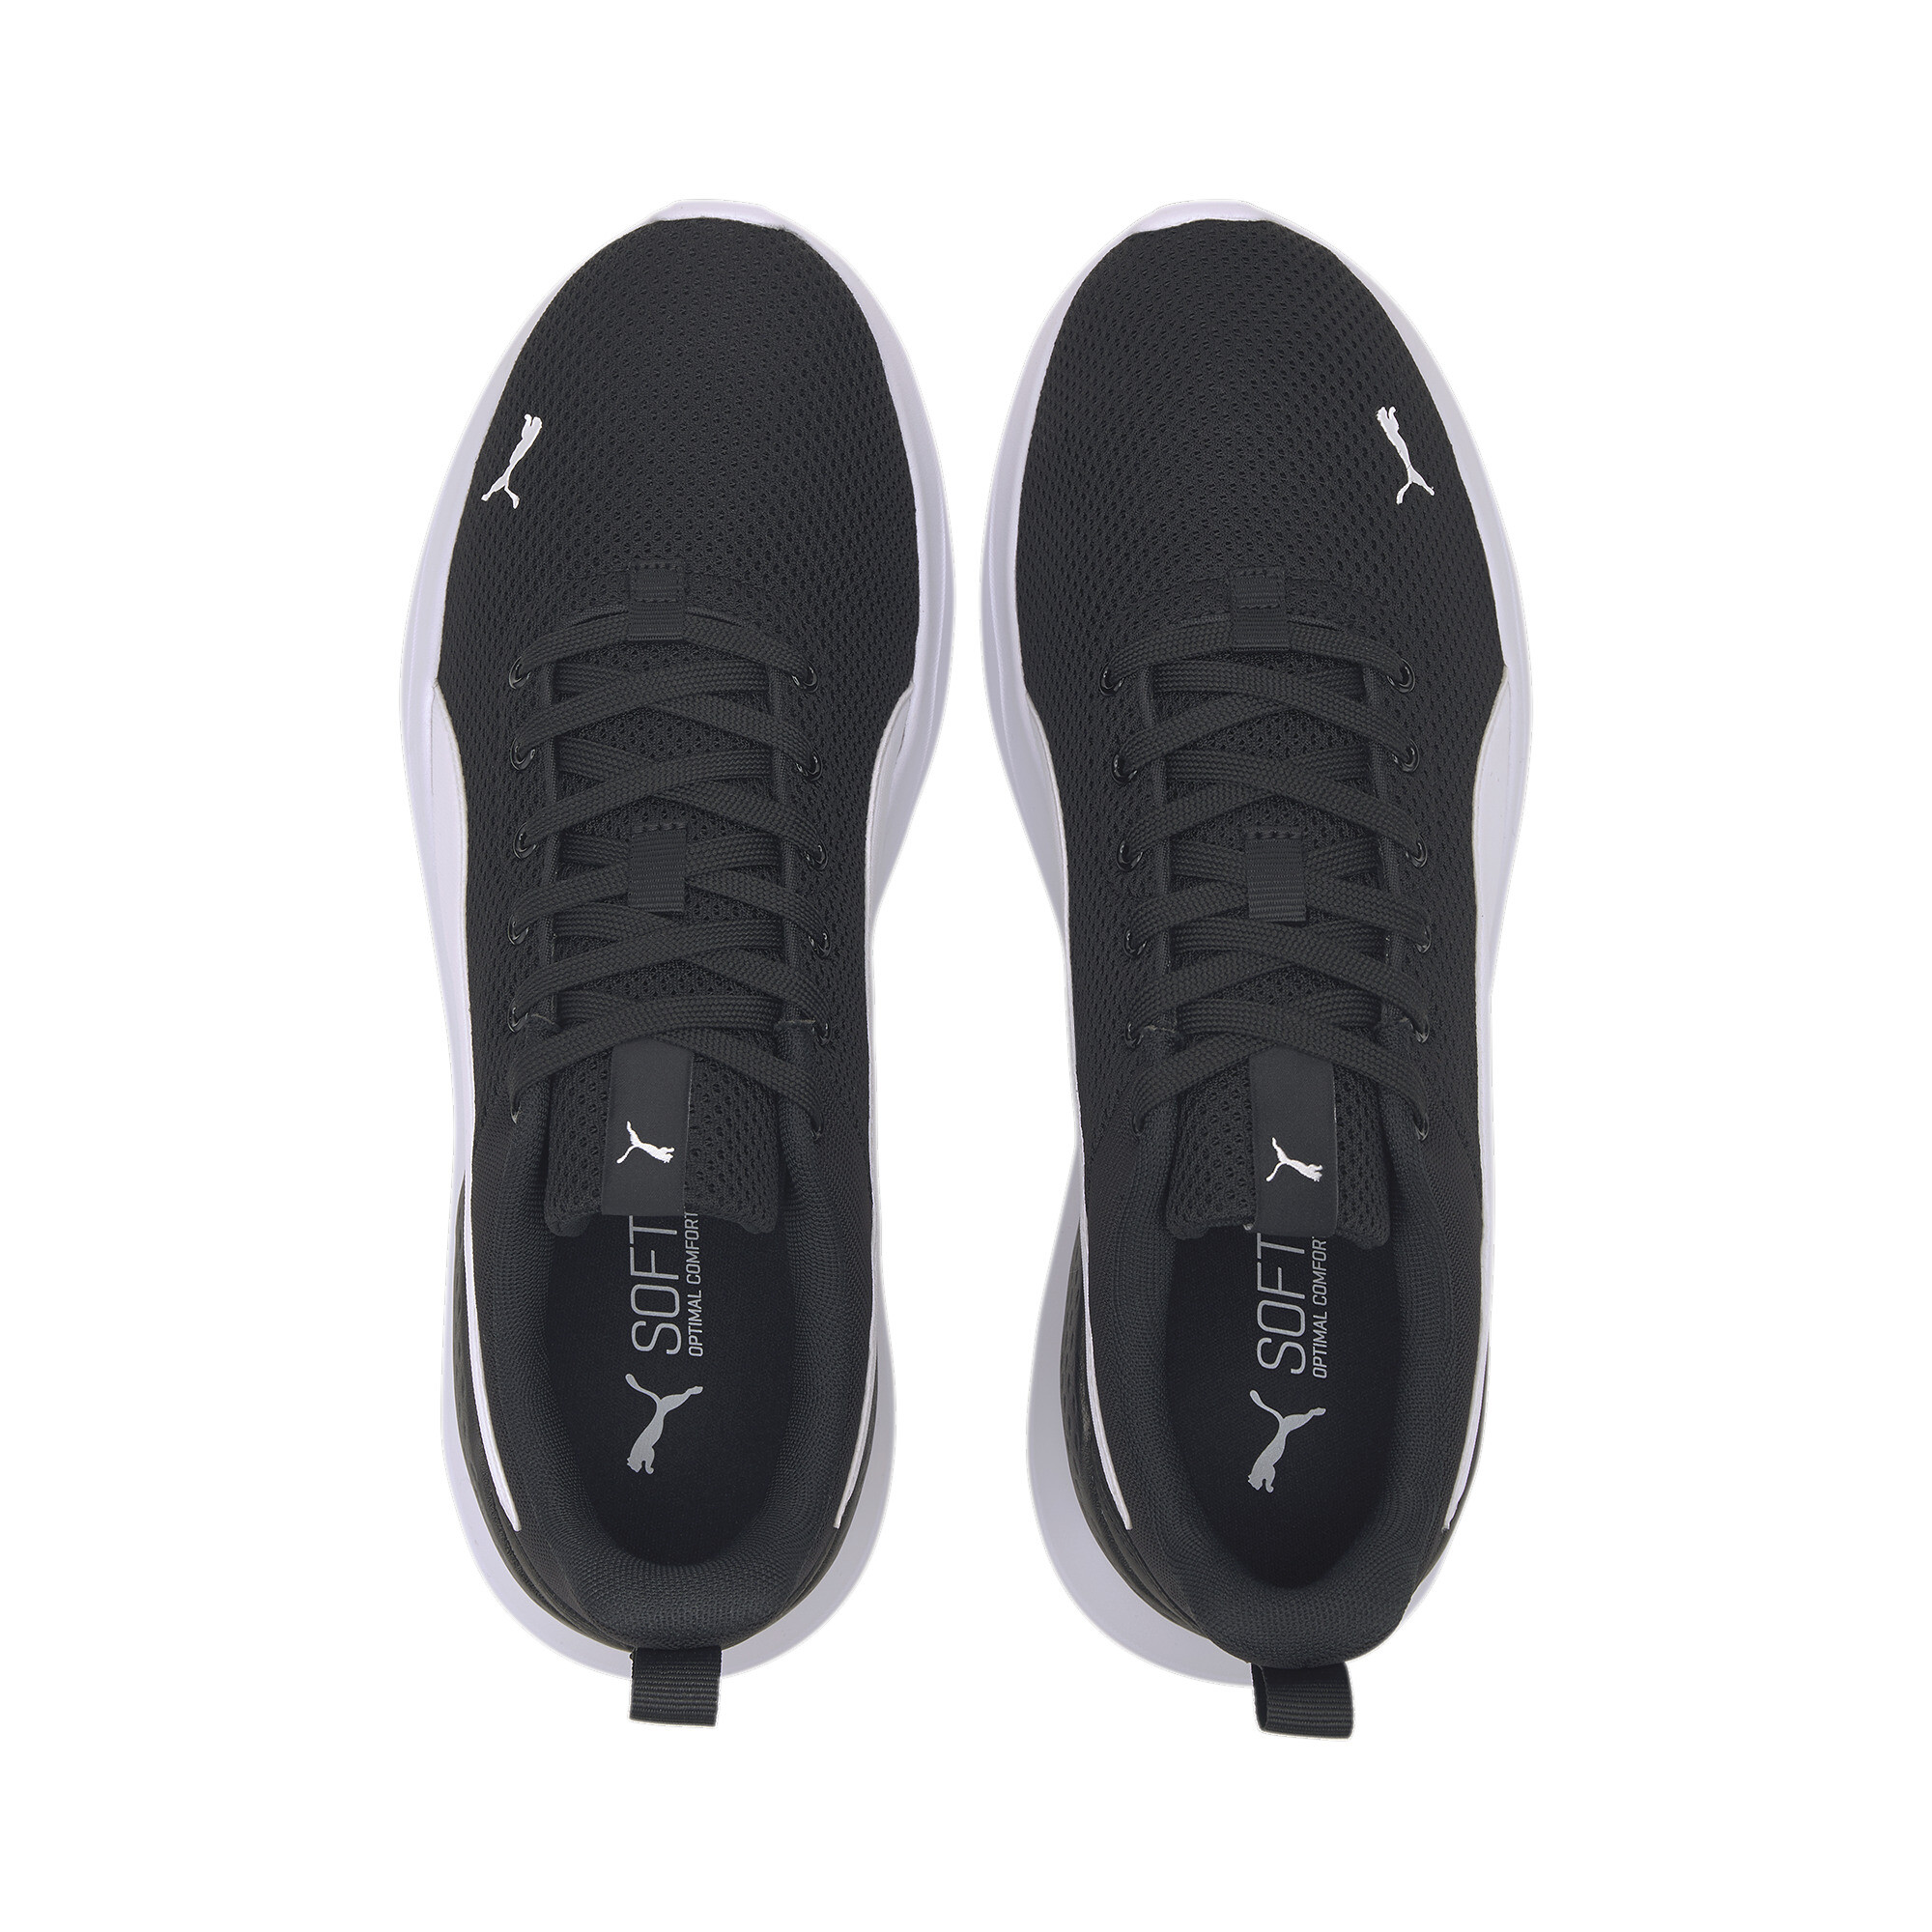 Men's PUMA Anzarun Lite Trainers Shoes In Black, Size EU 40.5